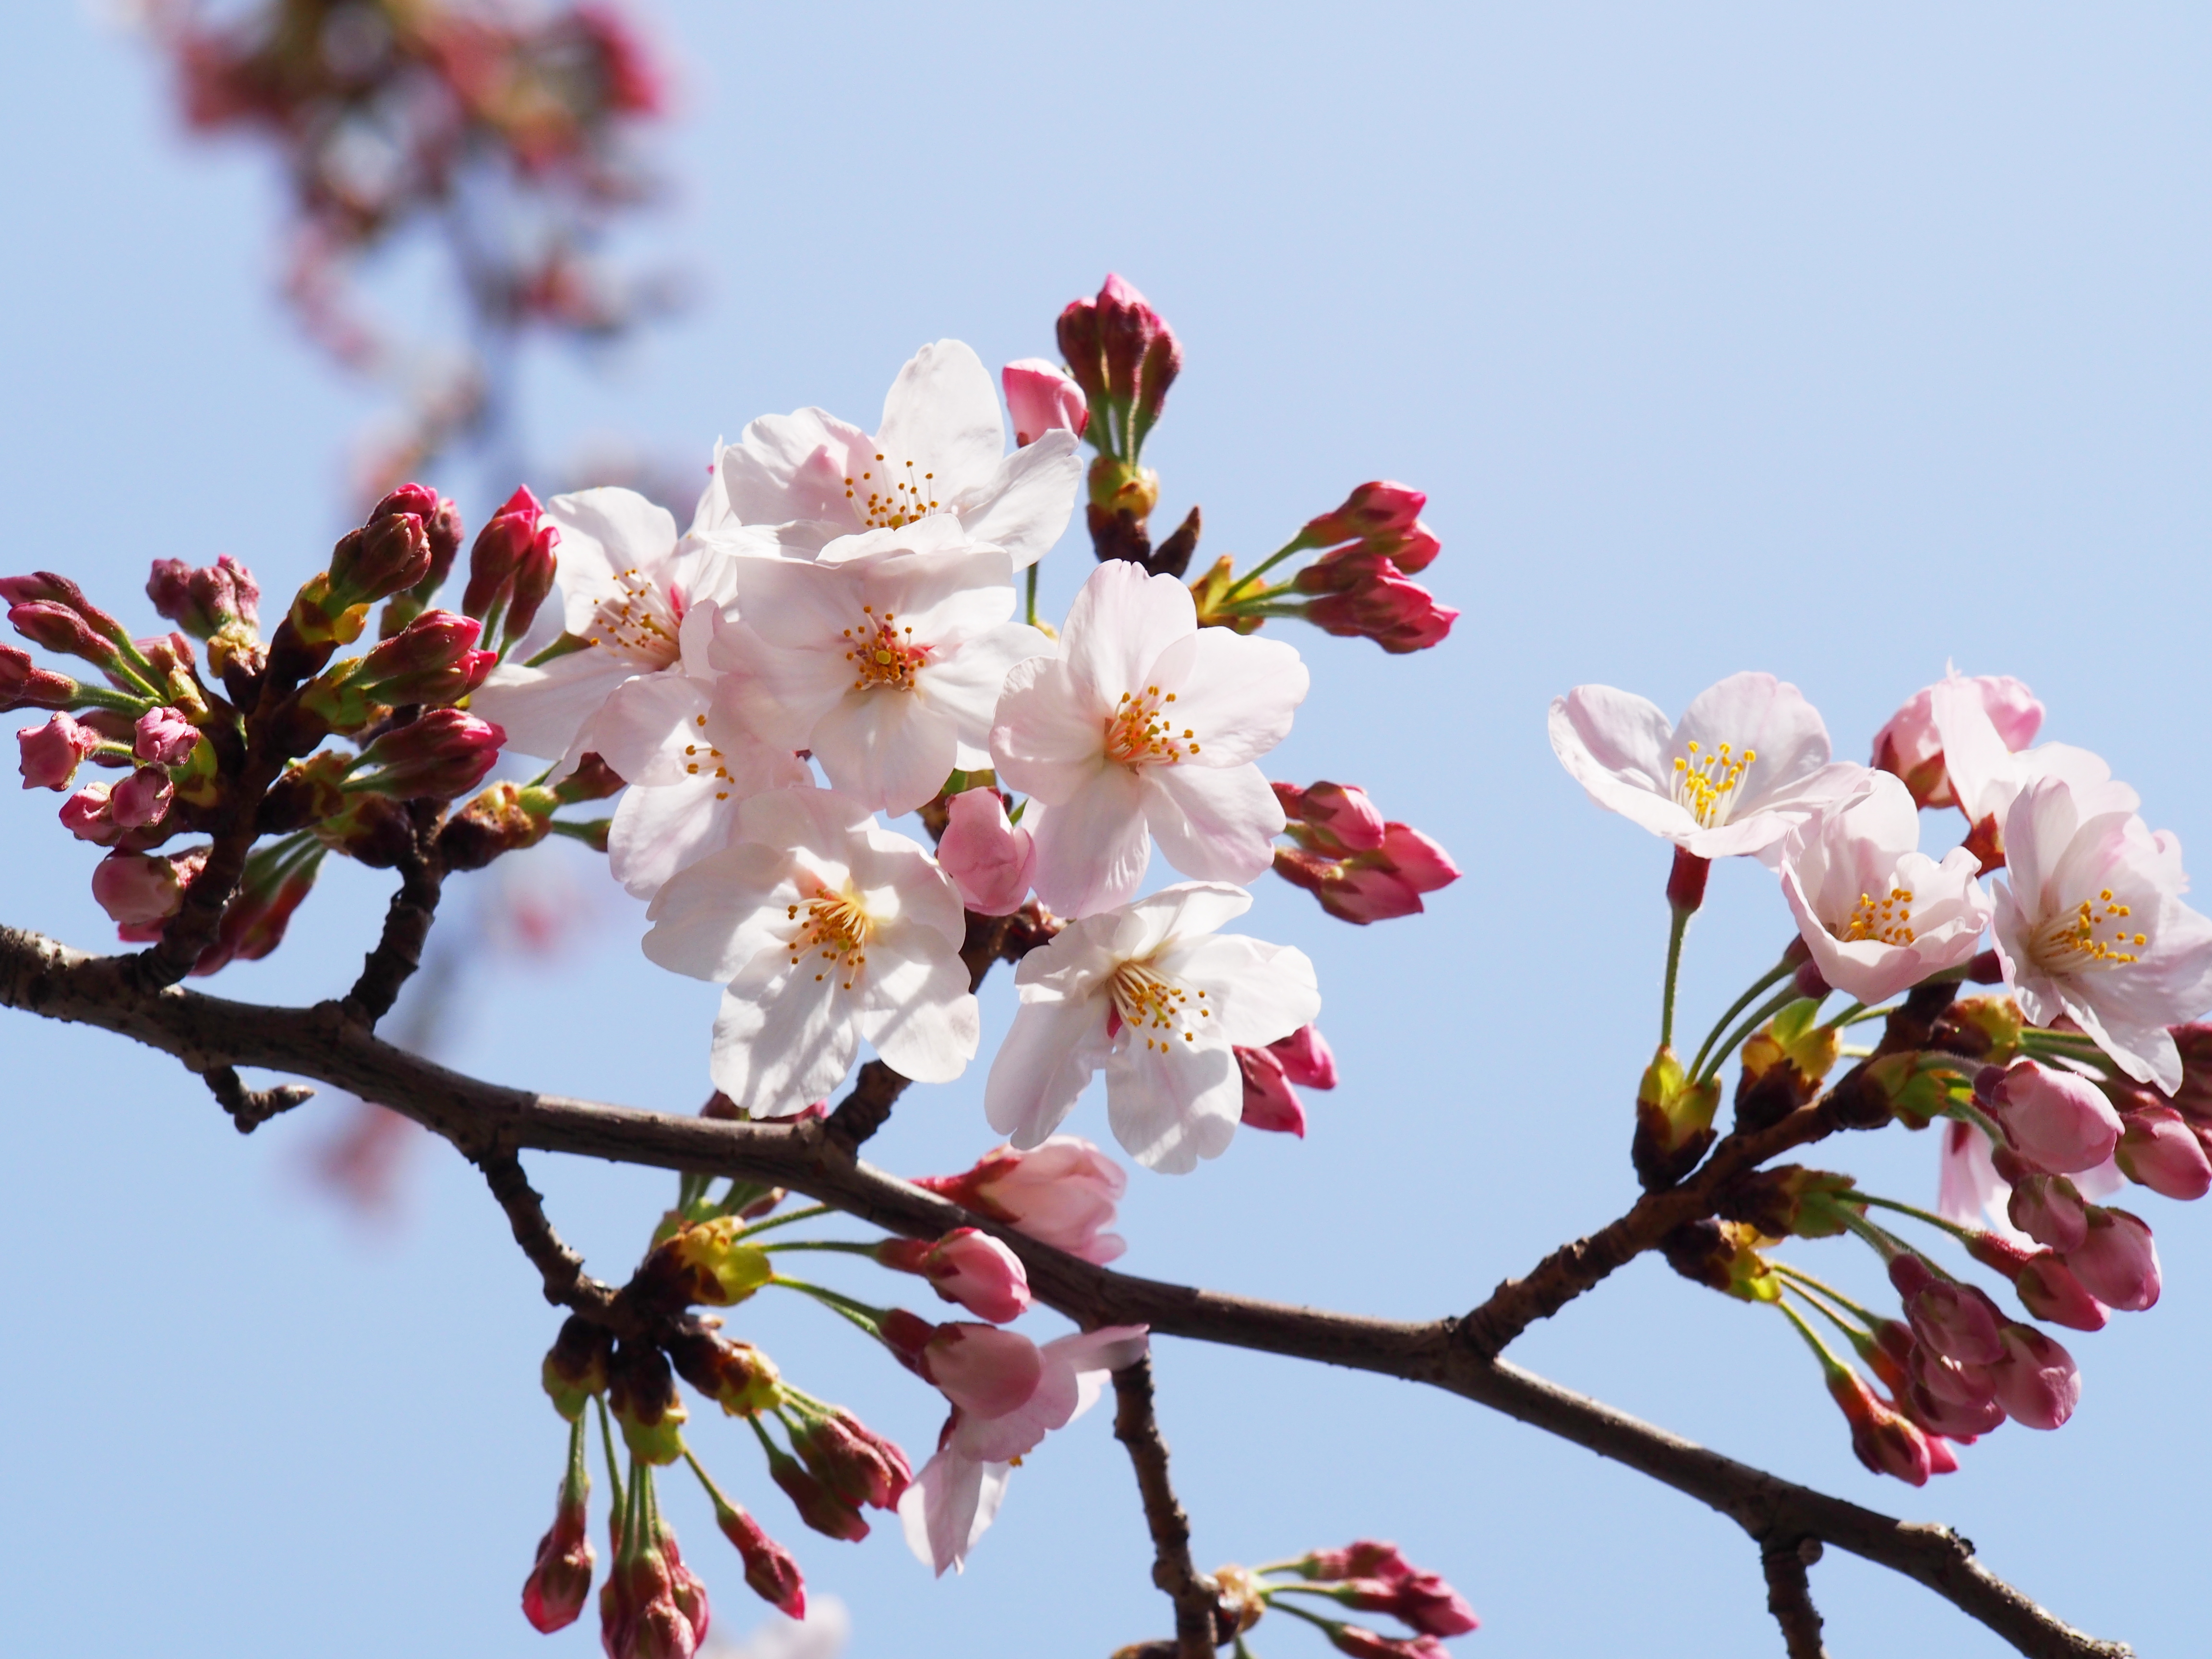 京都 原谷苑は桜や紅葉が美しい人気スポット 見頃や入園料を紹介 Travelnote トラベルノート